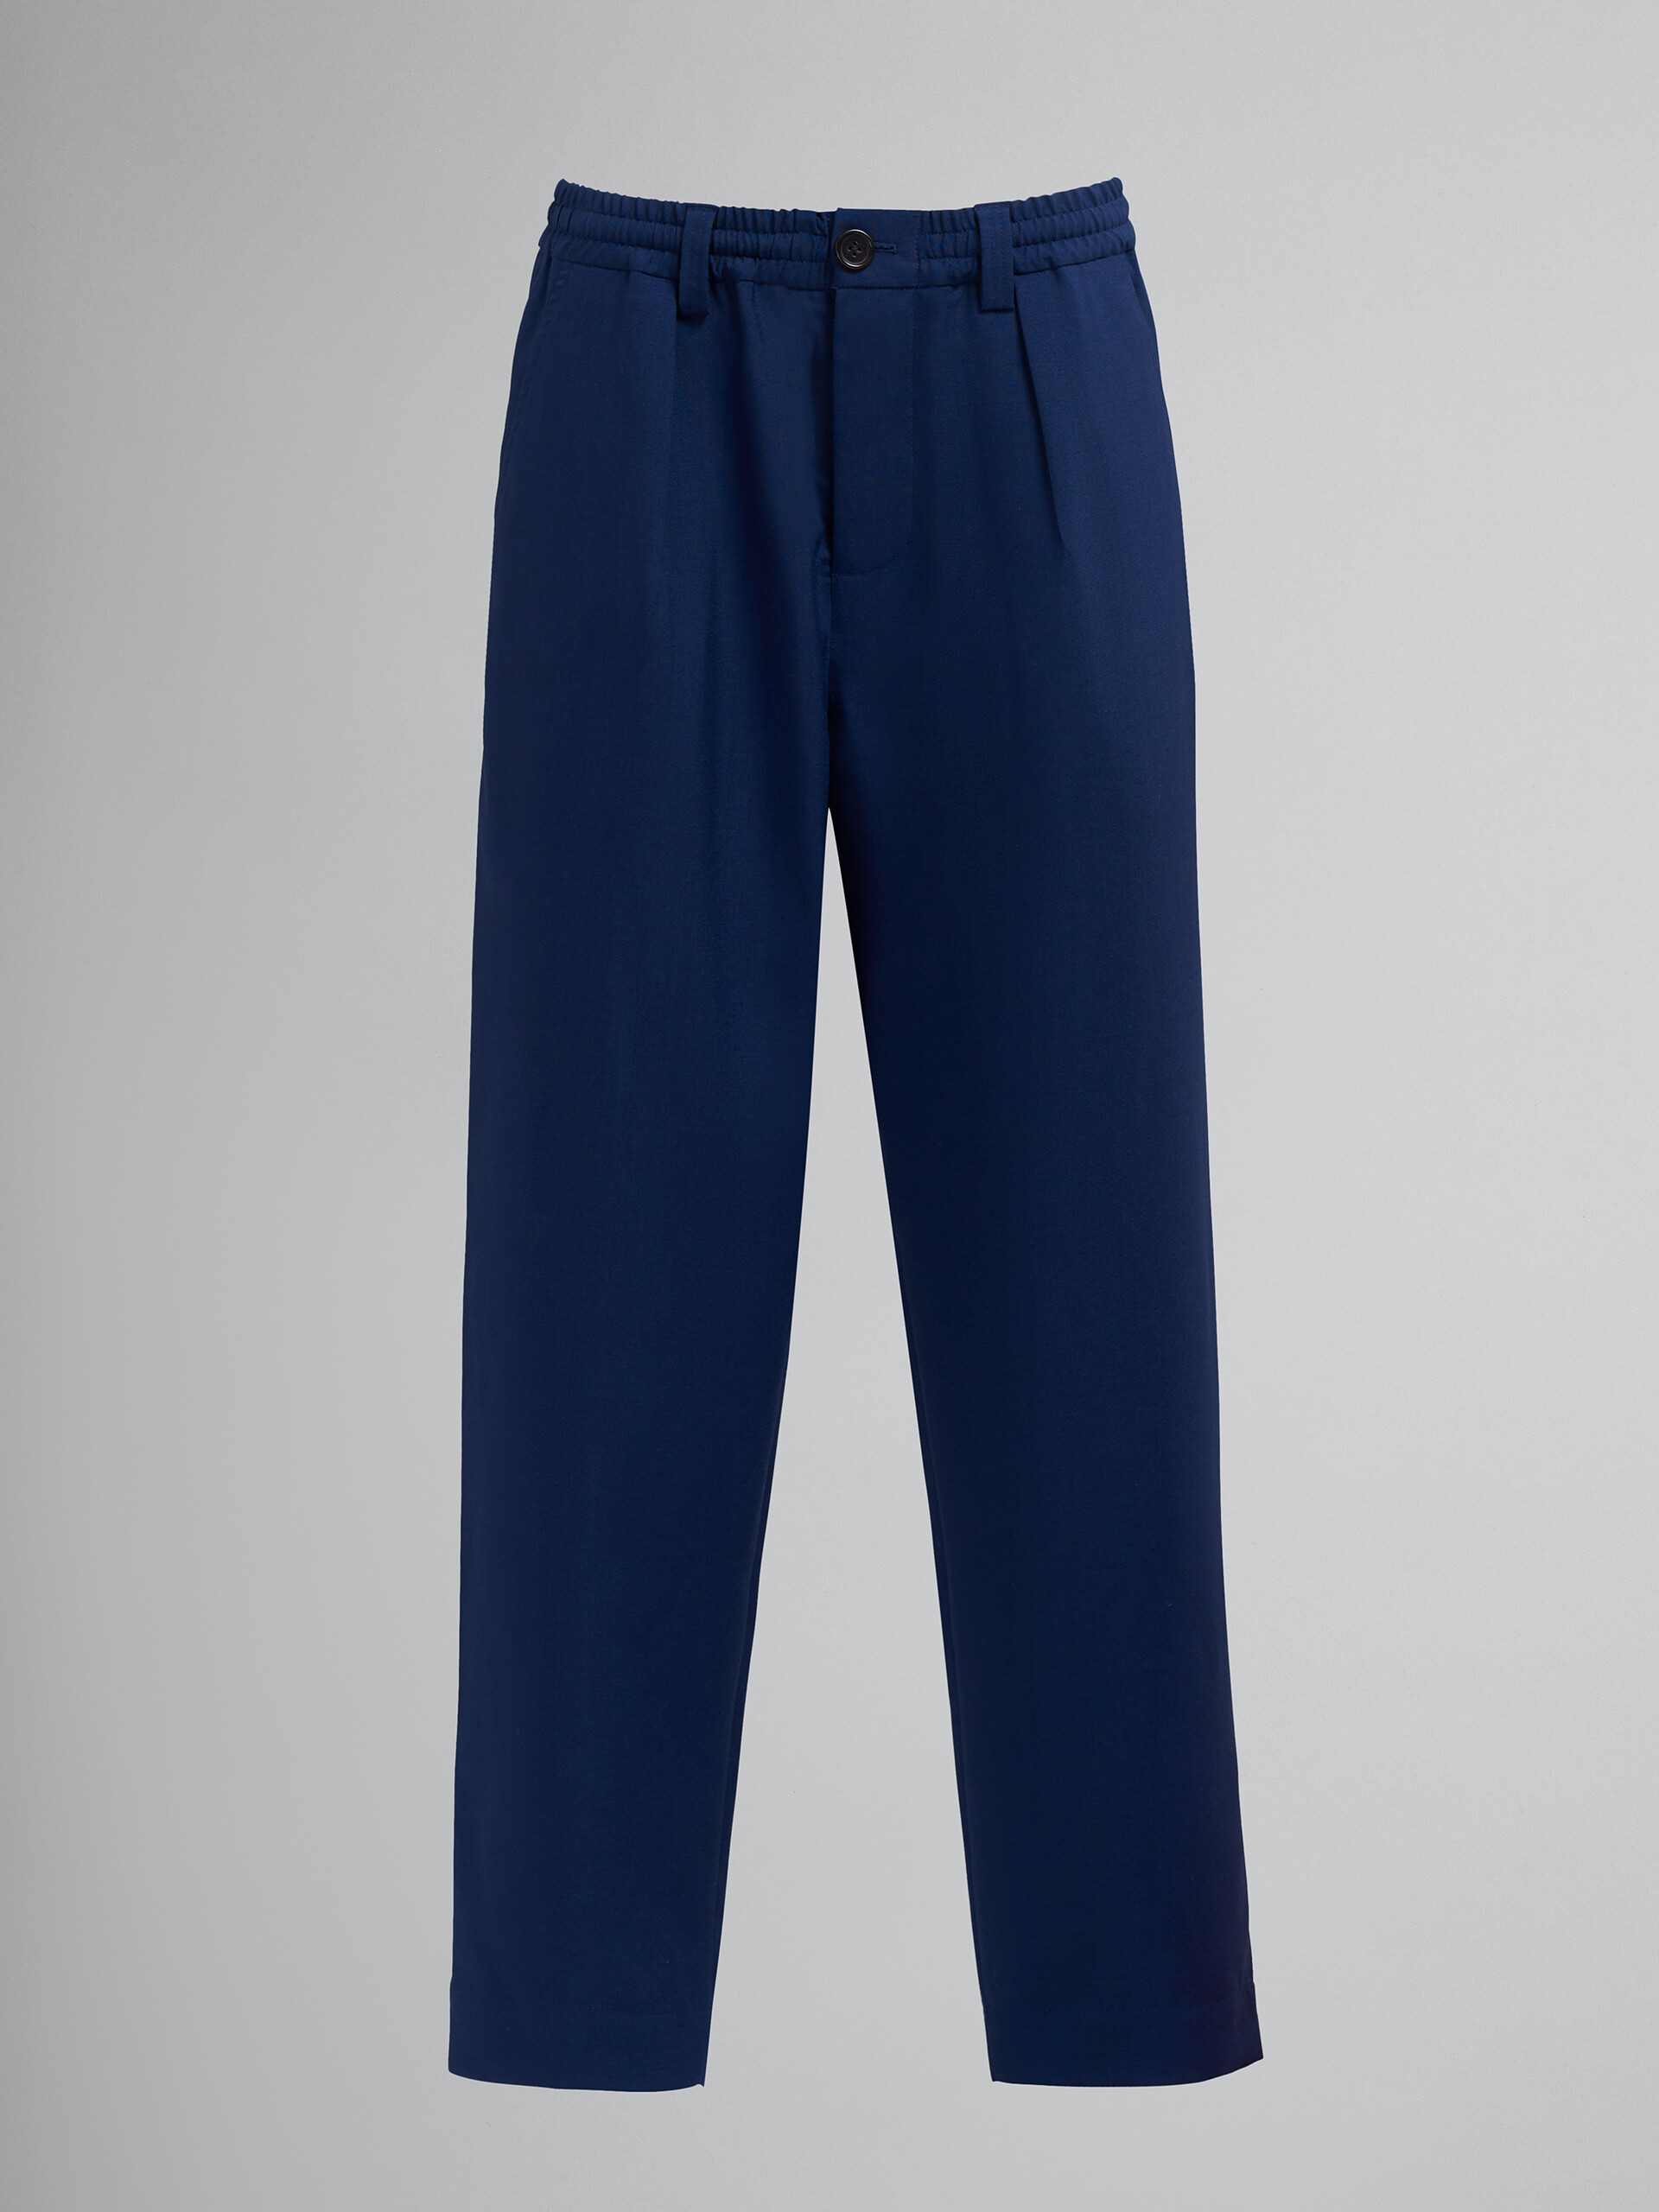 Blau-schwarze, kurz geschnittene Hose aus tropischer Wolle - Hosen - Image 1